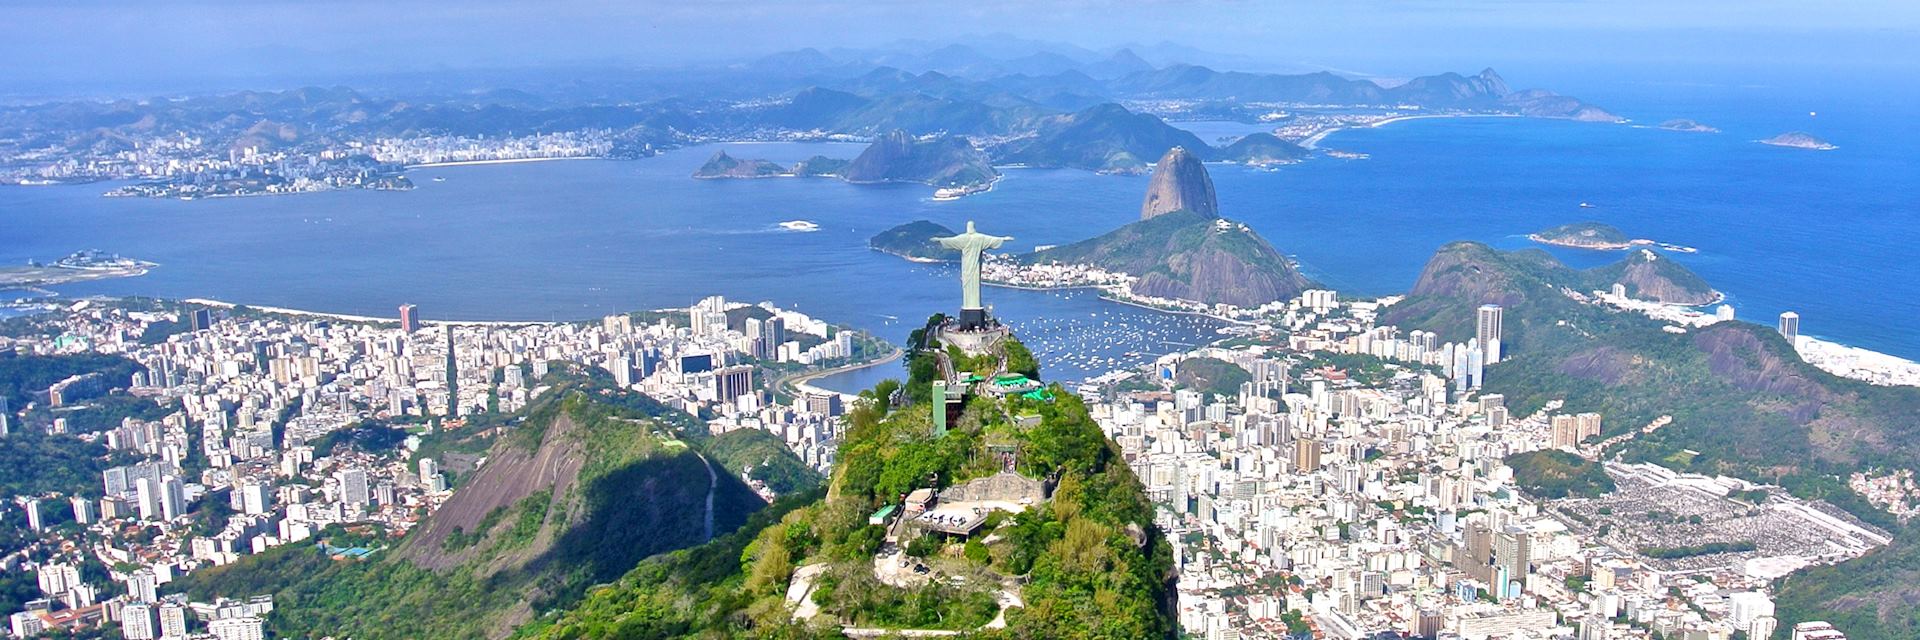 Christ the Redeemer overlooking Rio de Janeiro